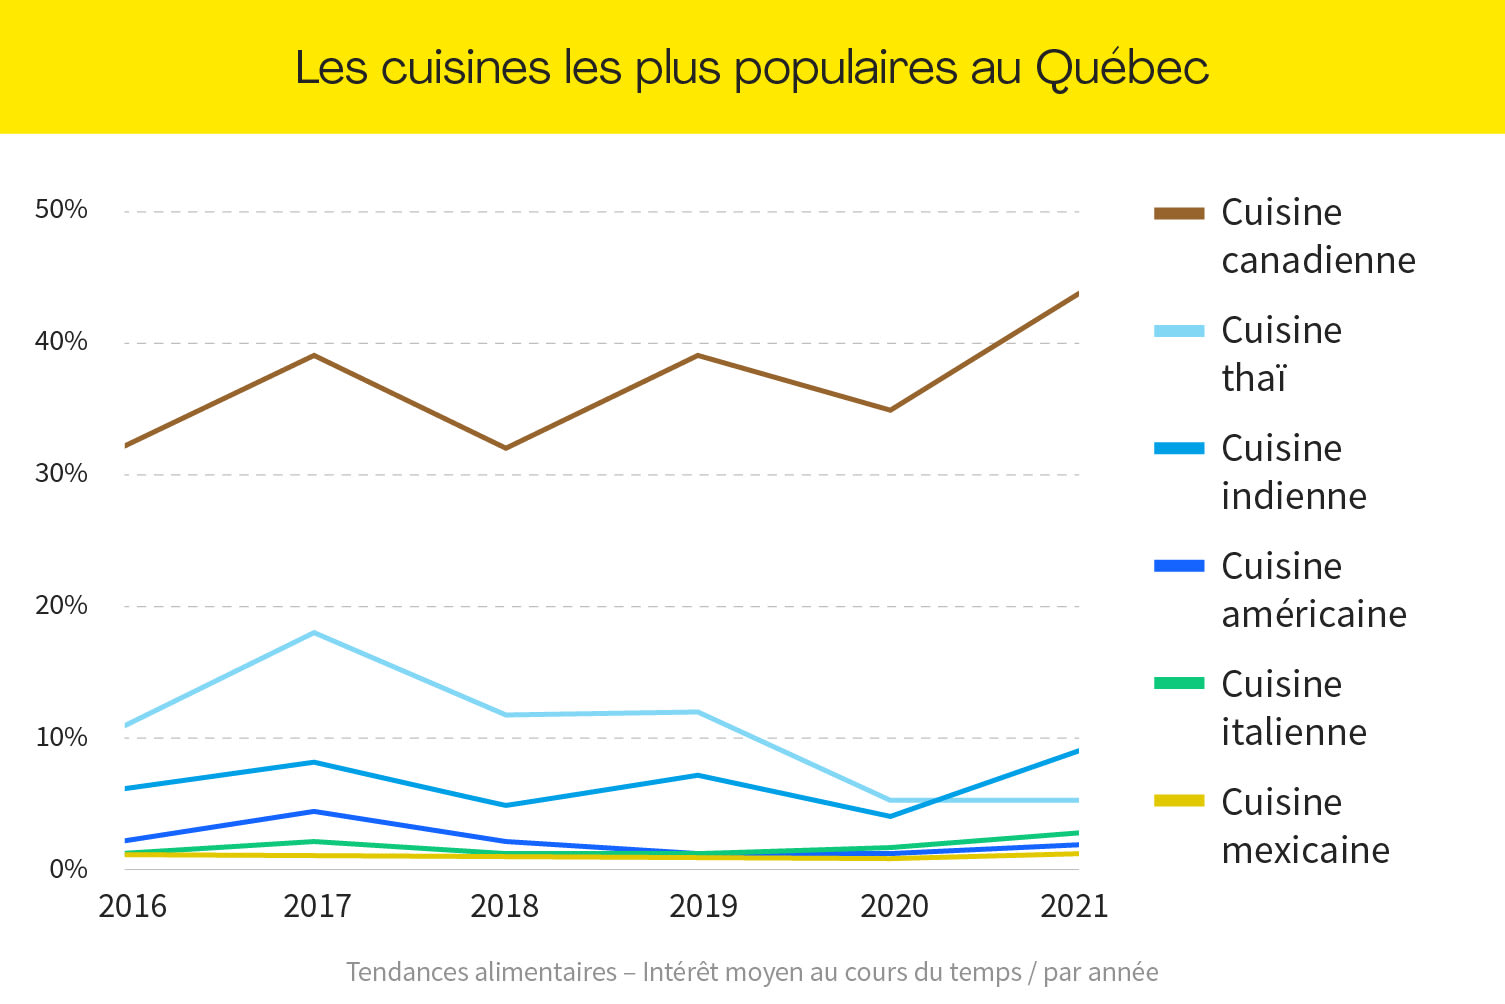 Les trois types de cuisines favoris au Québec 